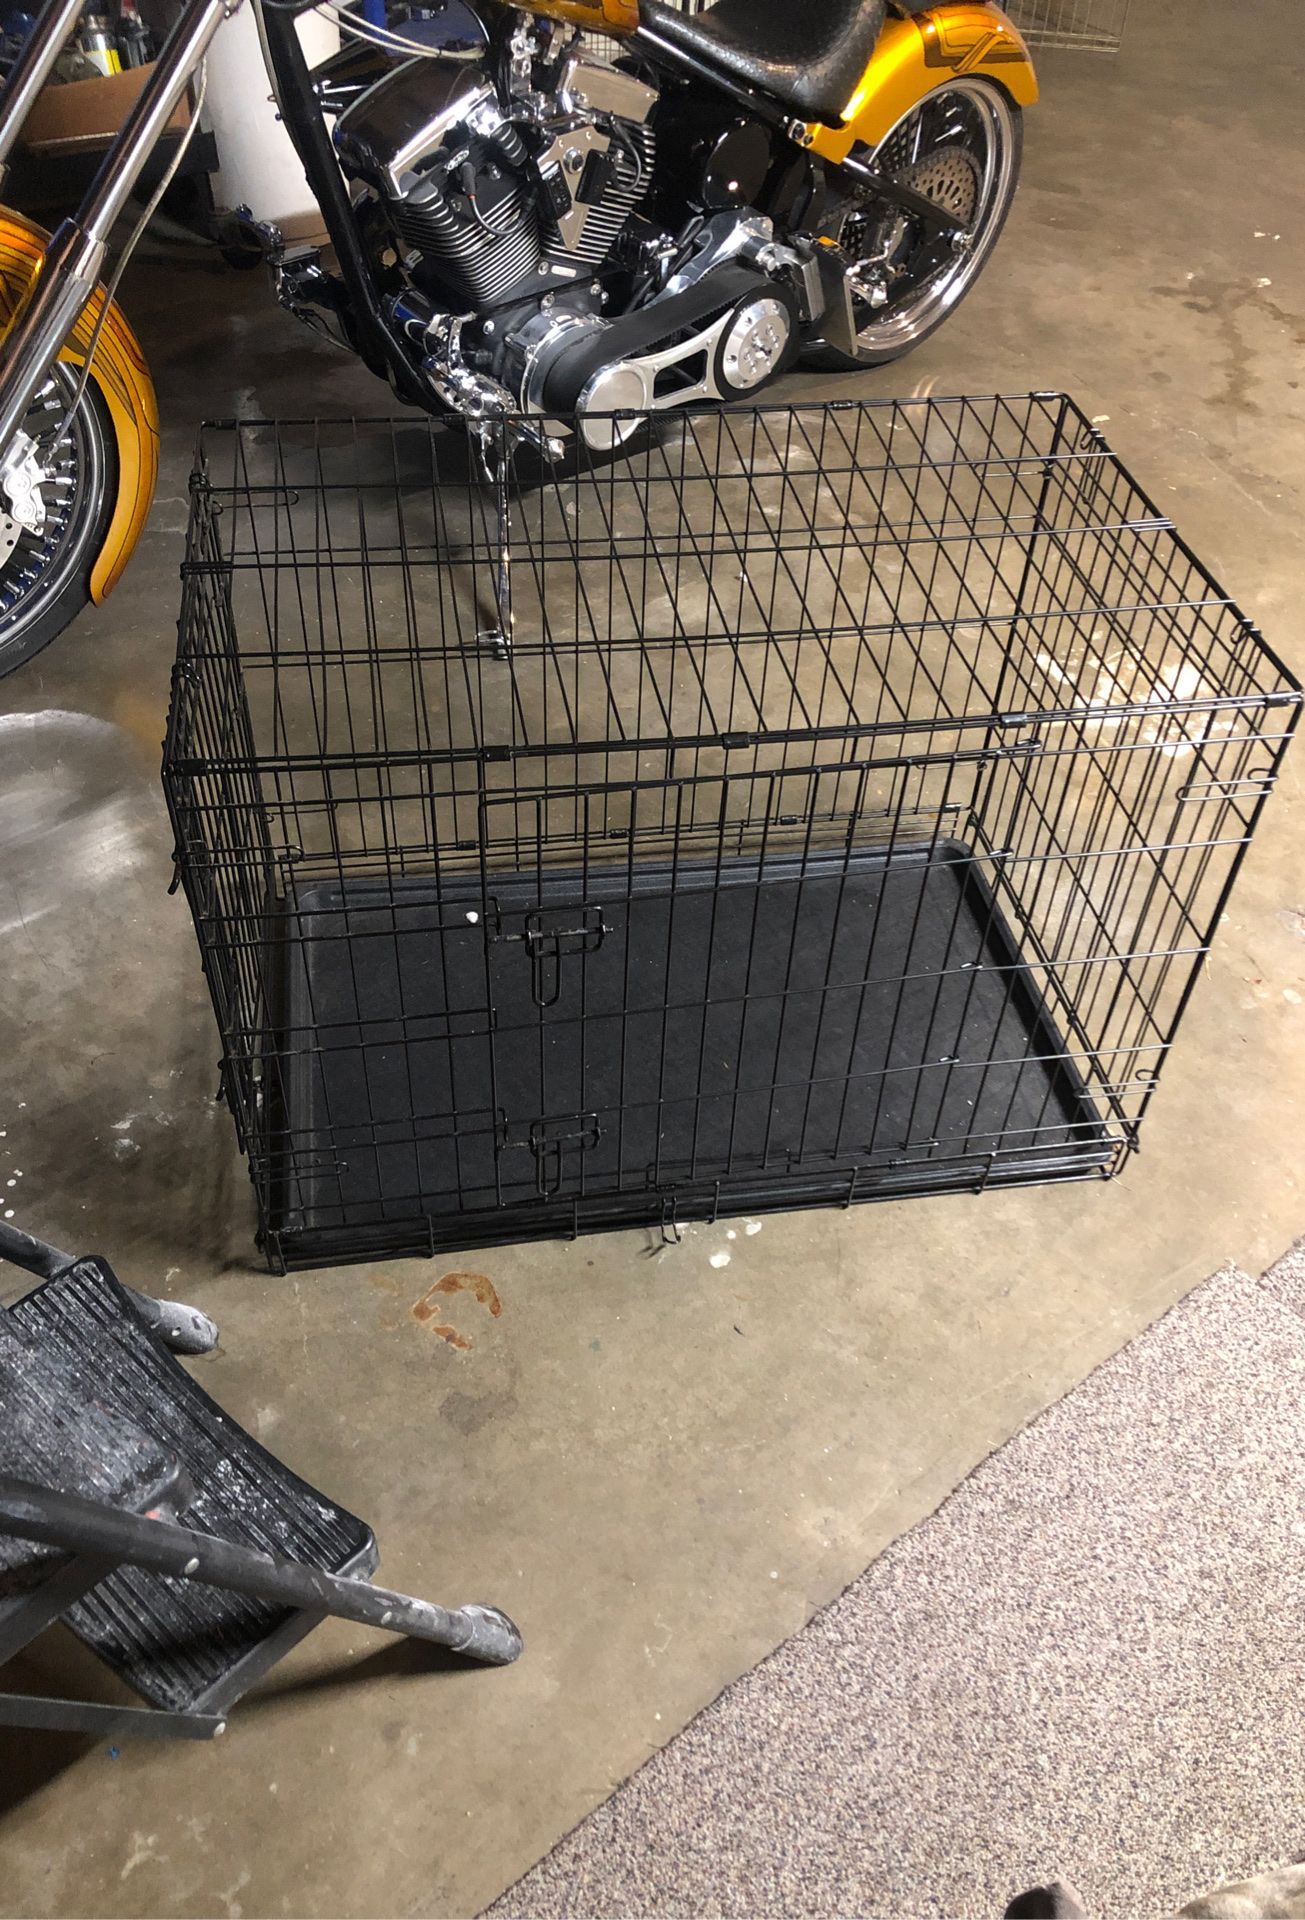 Dog kennel 50 bucks